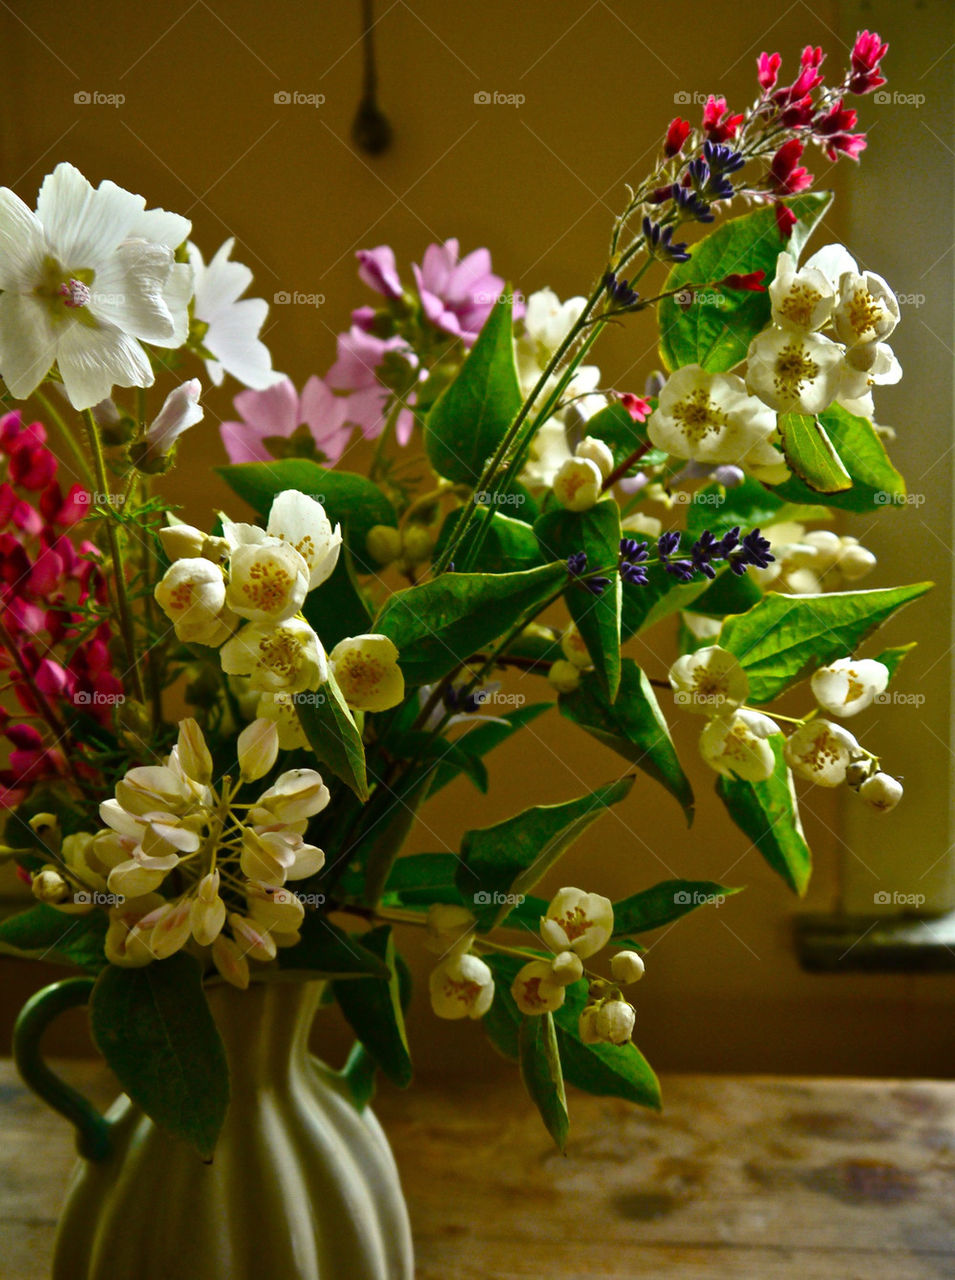 sweden flowers of blommor by ylvafloreman